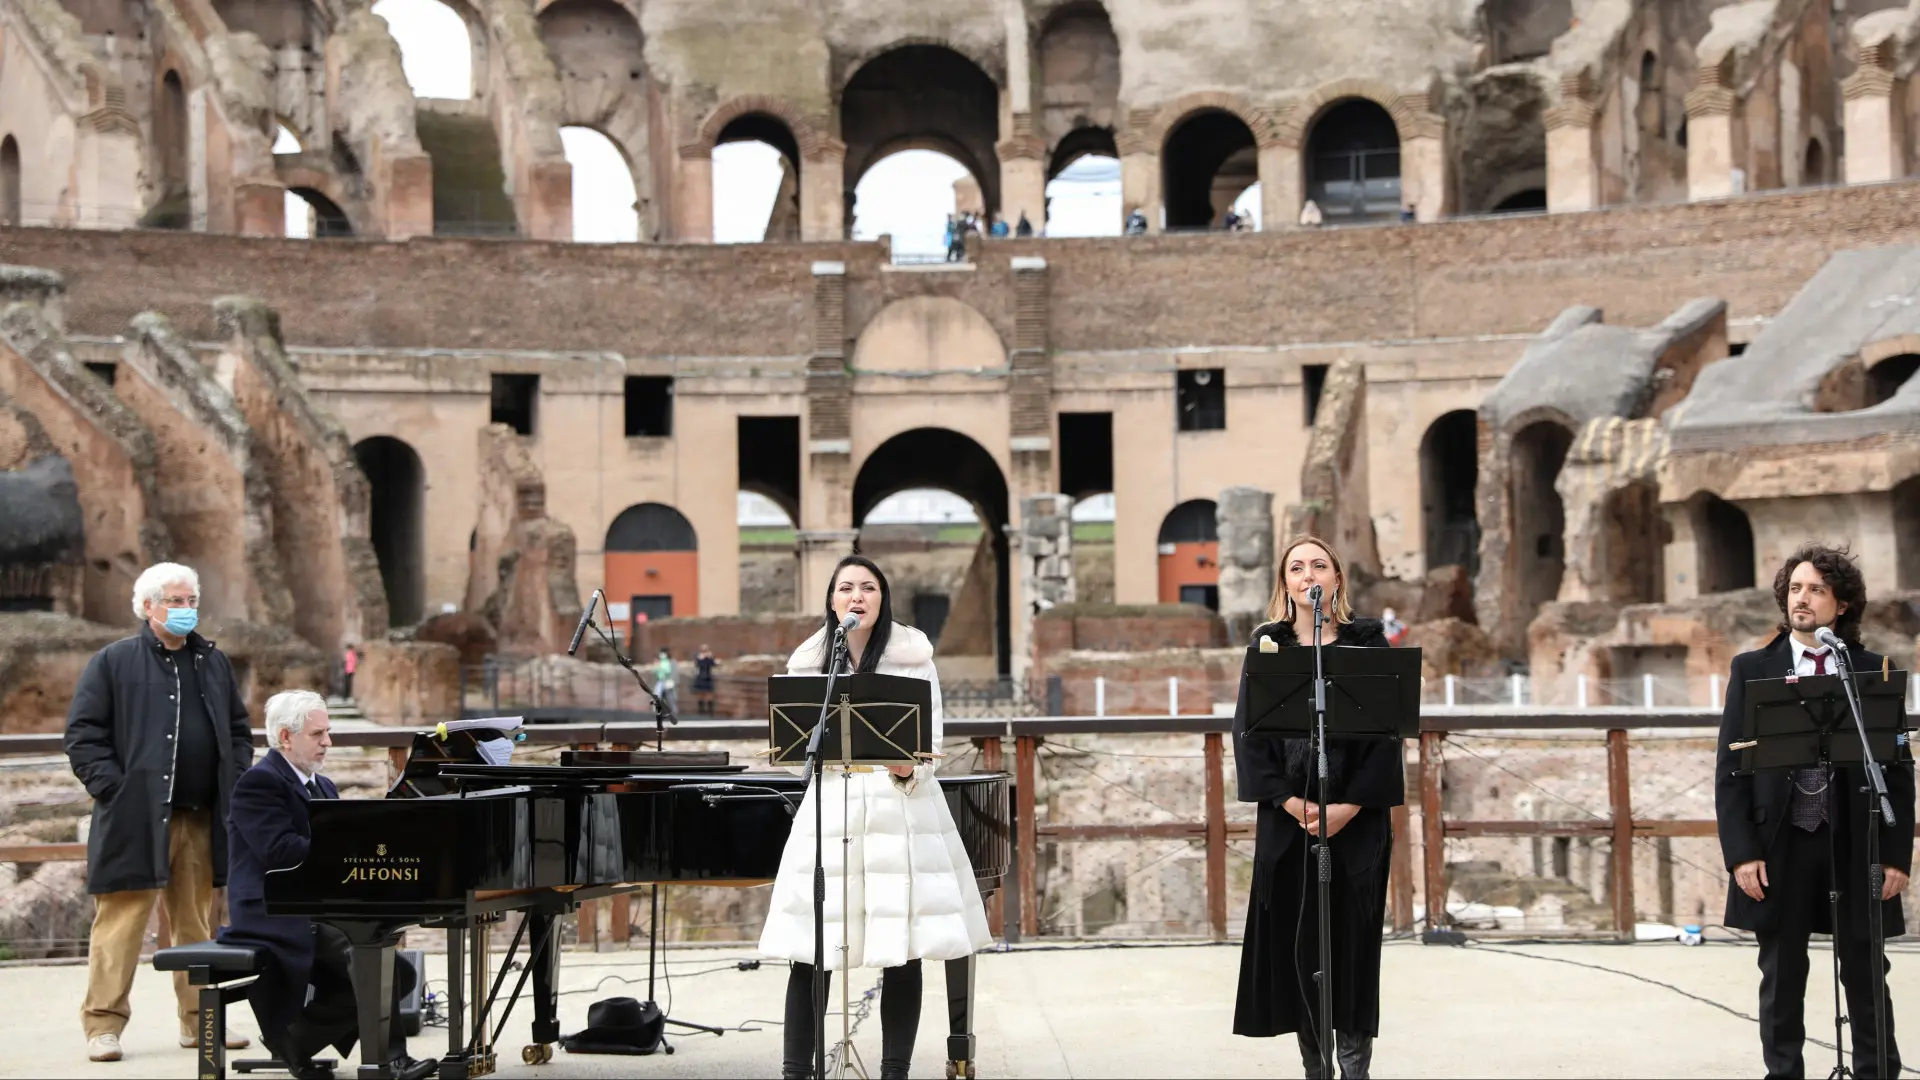 concierto violin coliseo roma - Qué pasó con el Coliseo de Roma